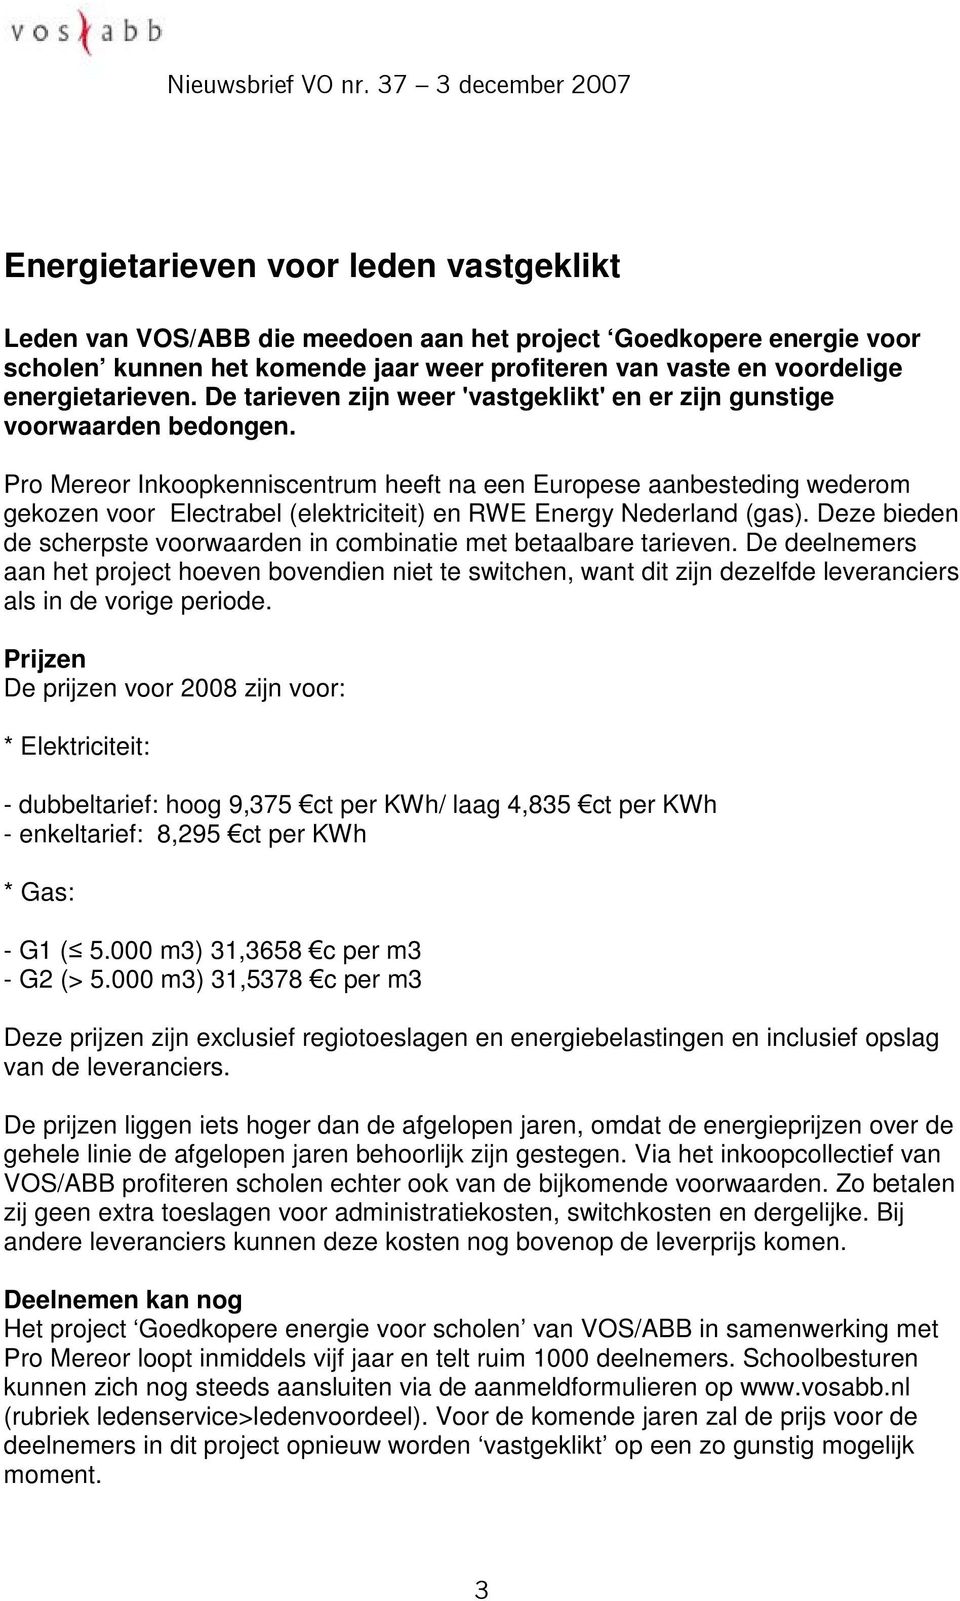 Pro Mereor Inkoopkenniscentrum heeft na een Europese aanbesteding wederom gekozen voor Electrabel (elektriciteit) en RWE Energy Nederland (gas).